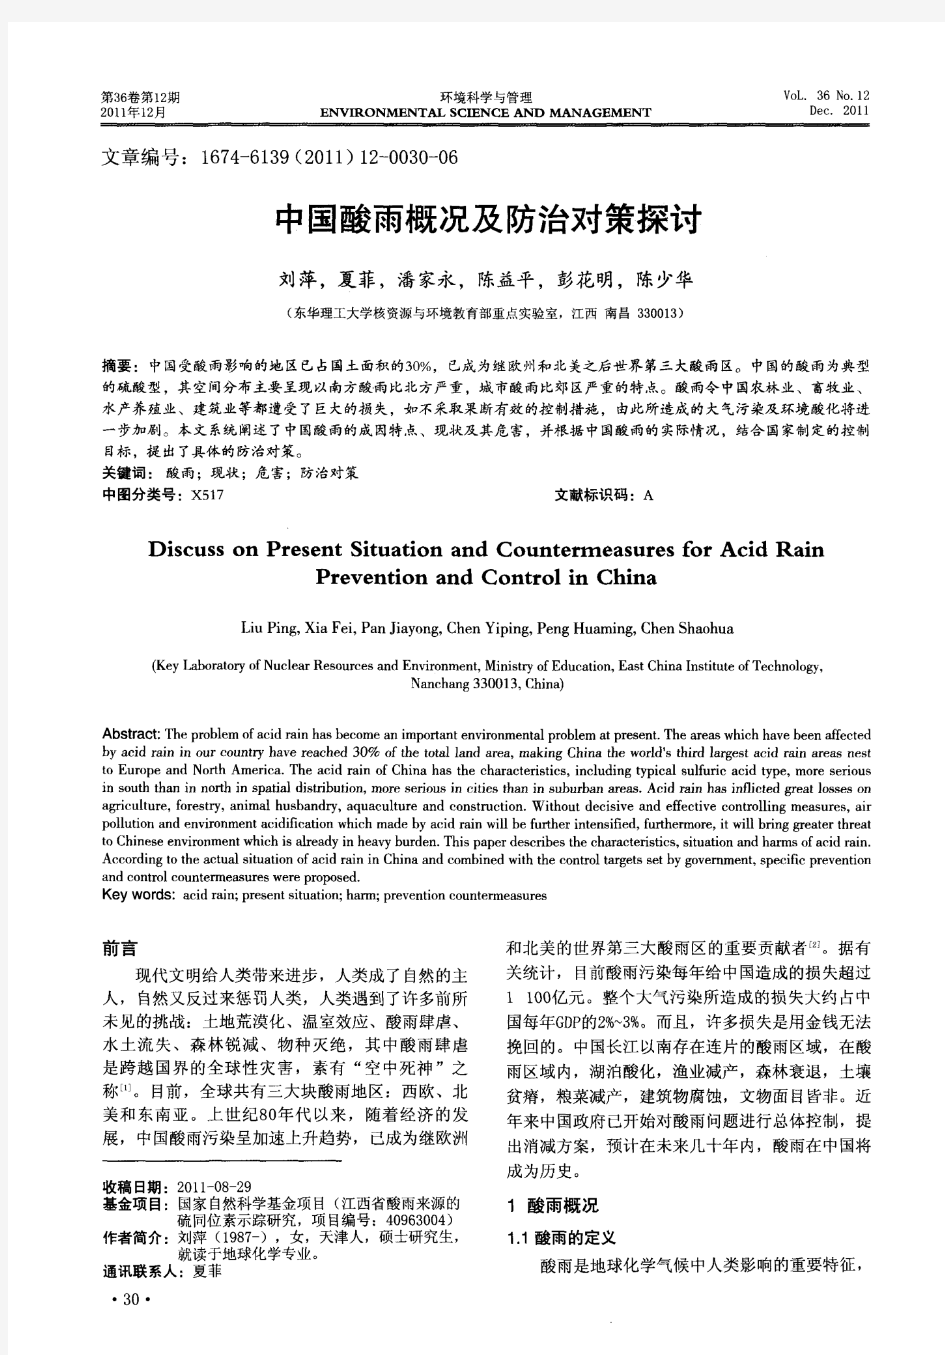 中国酸雨概况及防治对策探讨